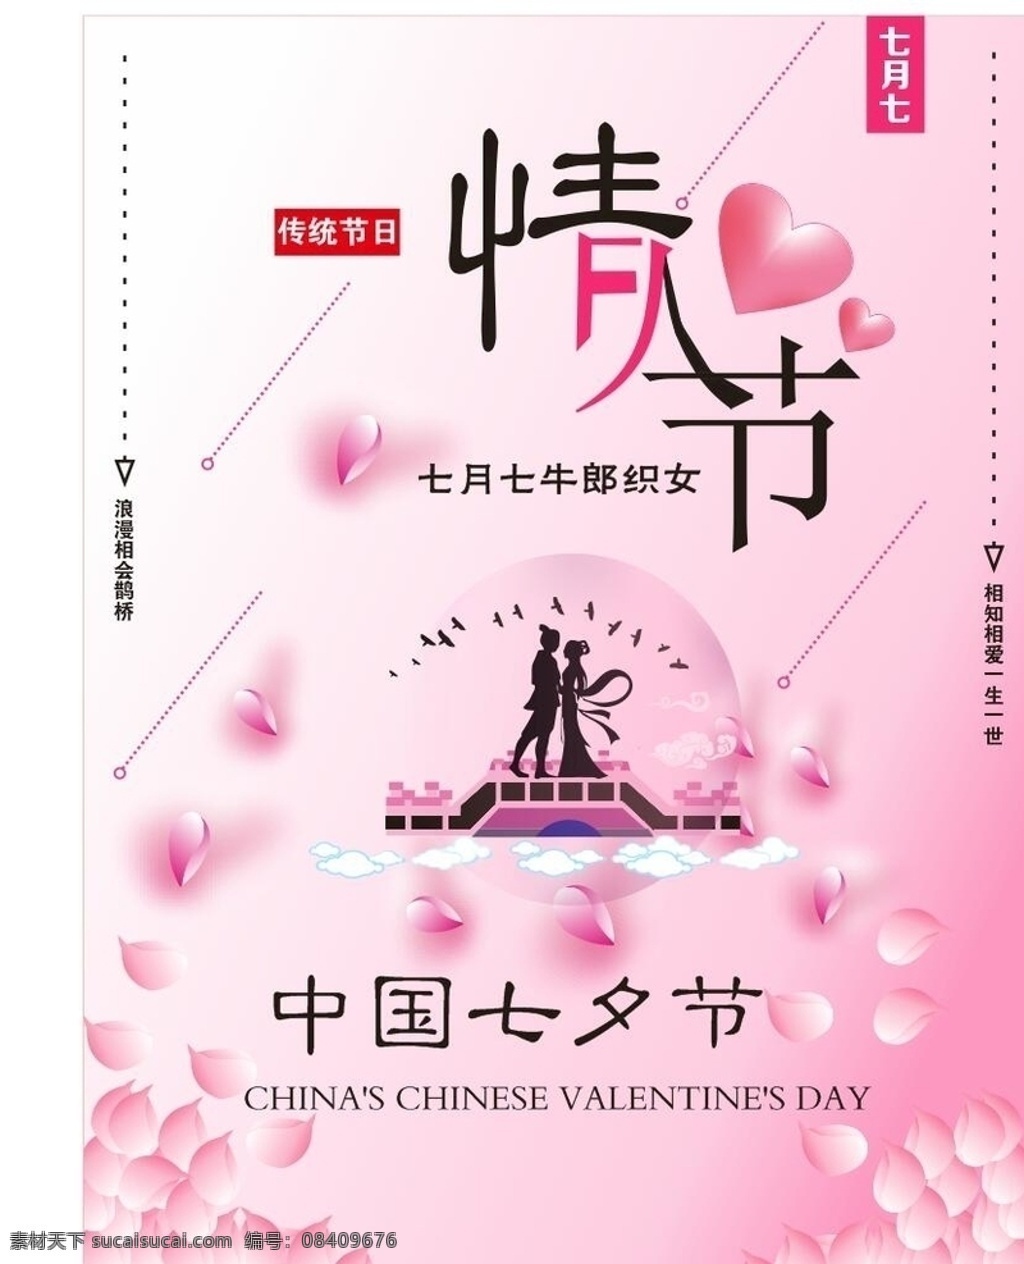 情人节 七夕 浪漫 粉色 花瓣 海报 宣传 爱情 牛郎织女 文化艺术